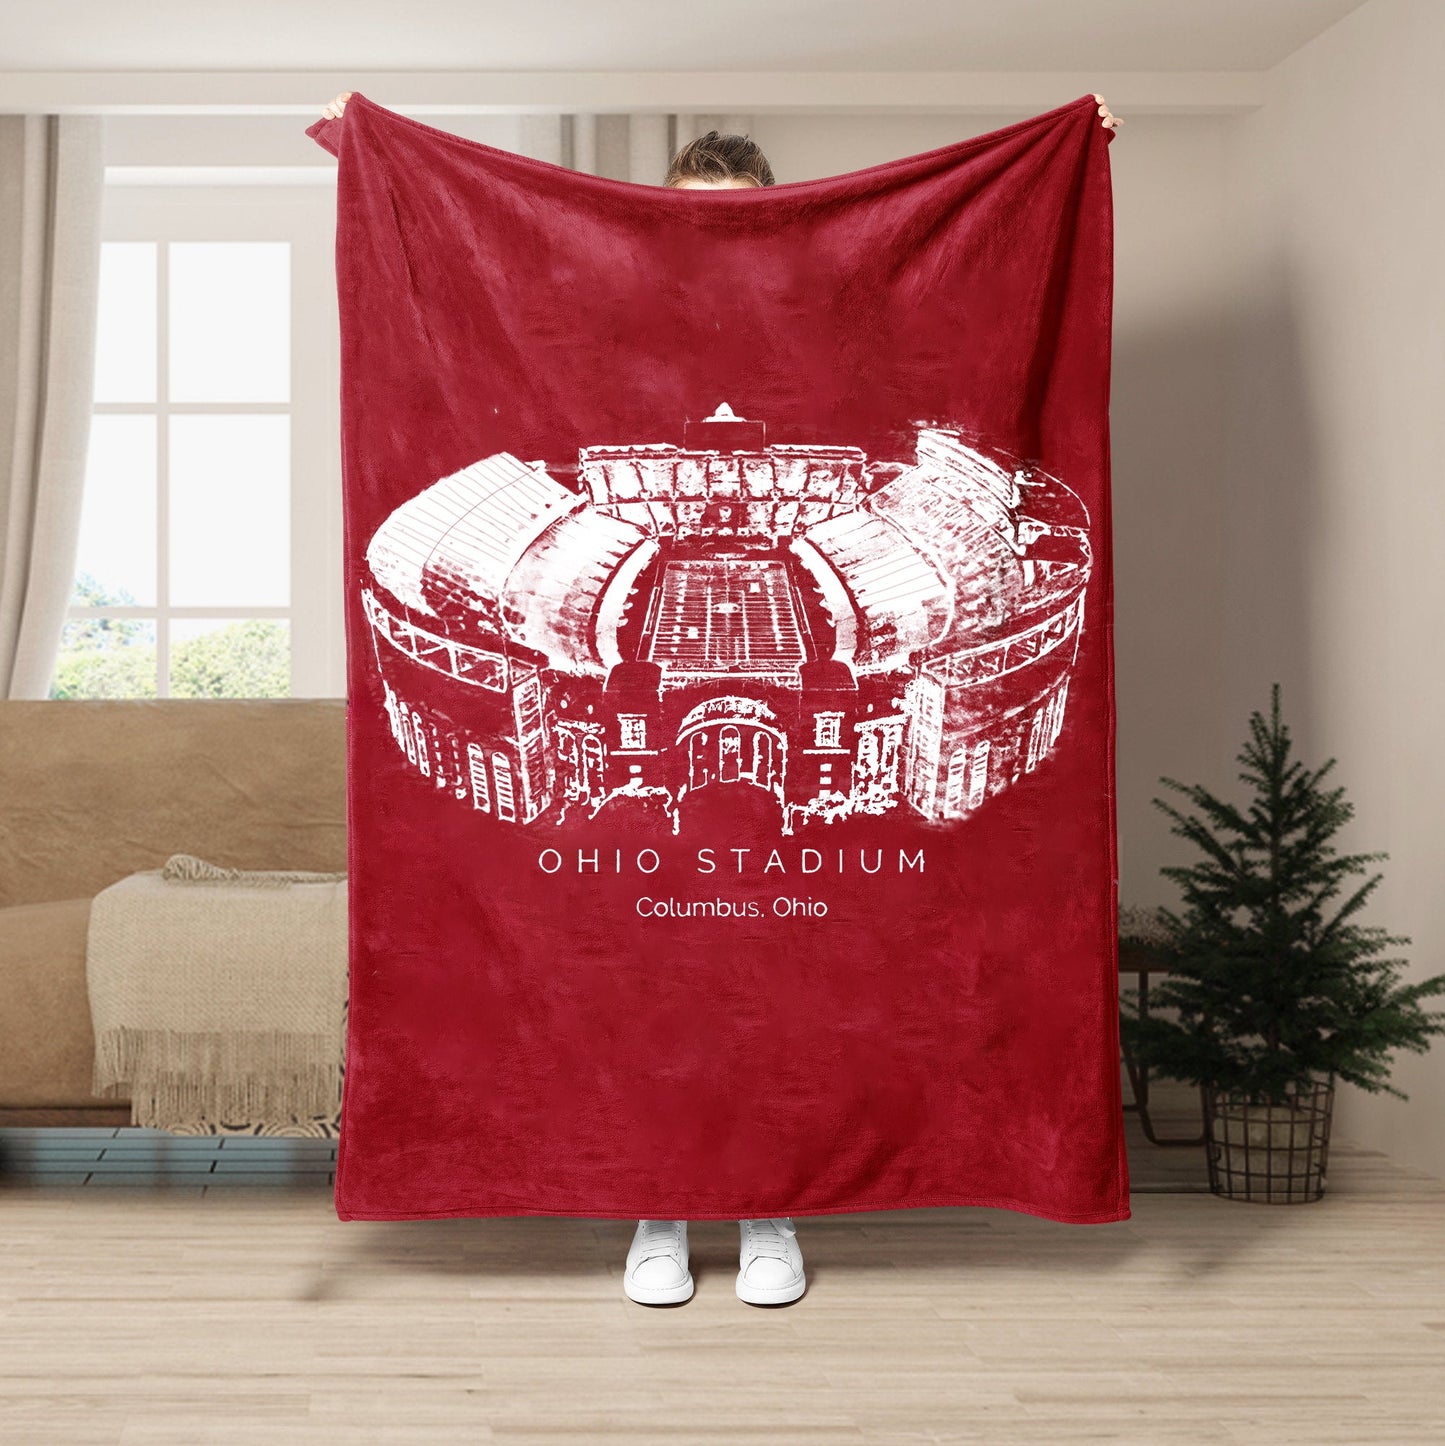 Ohio Stadium - Ohio State Buckeyes football, College Football Blanket